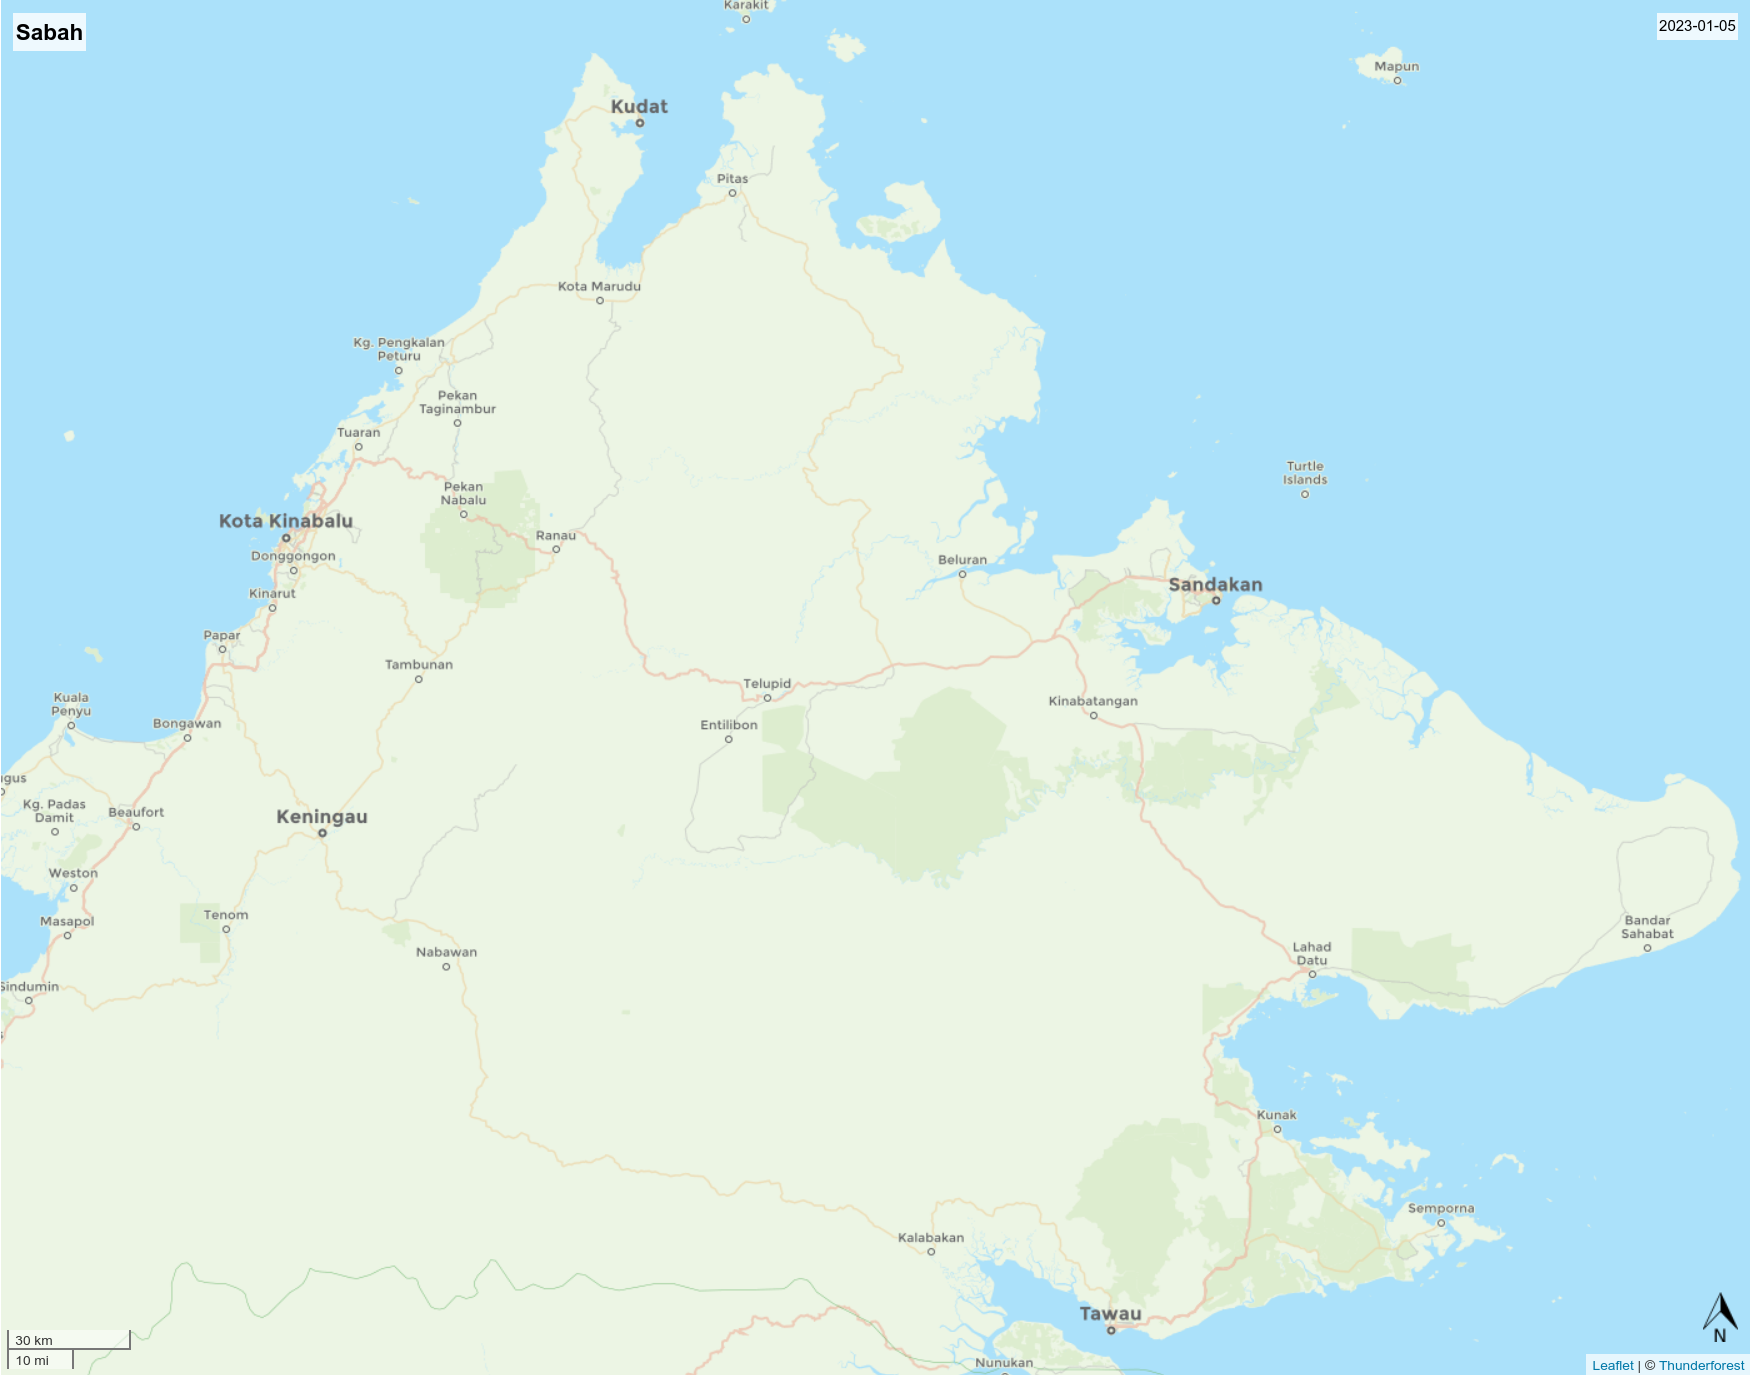 20230104.3.Sabah.png